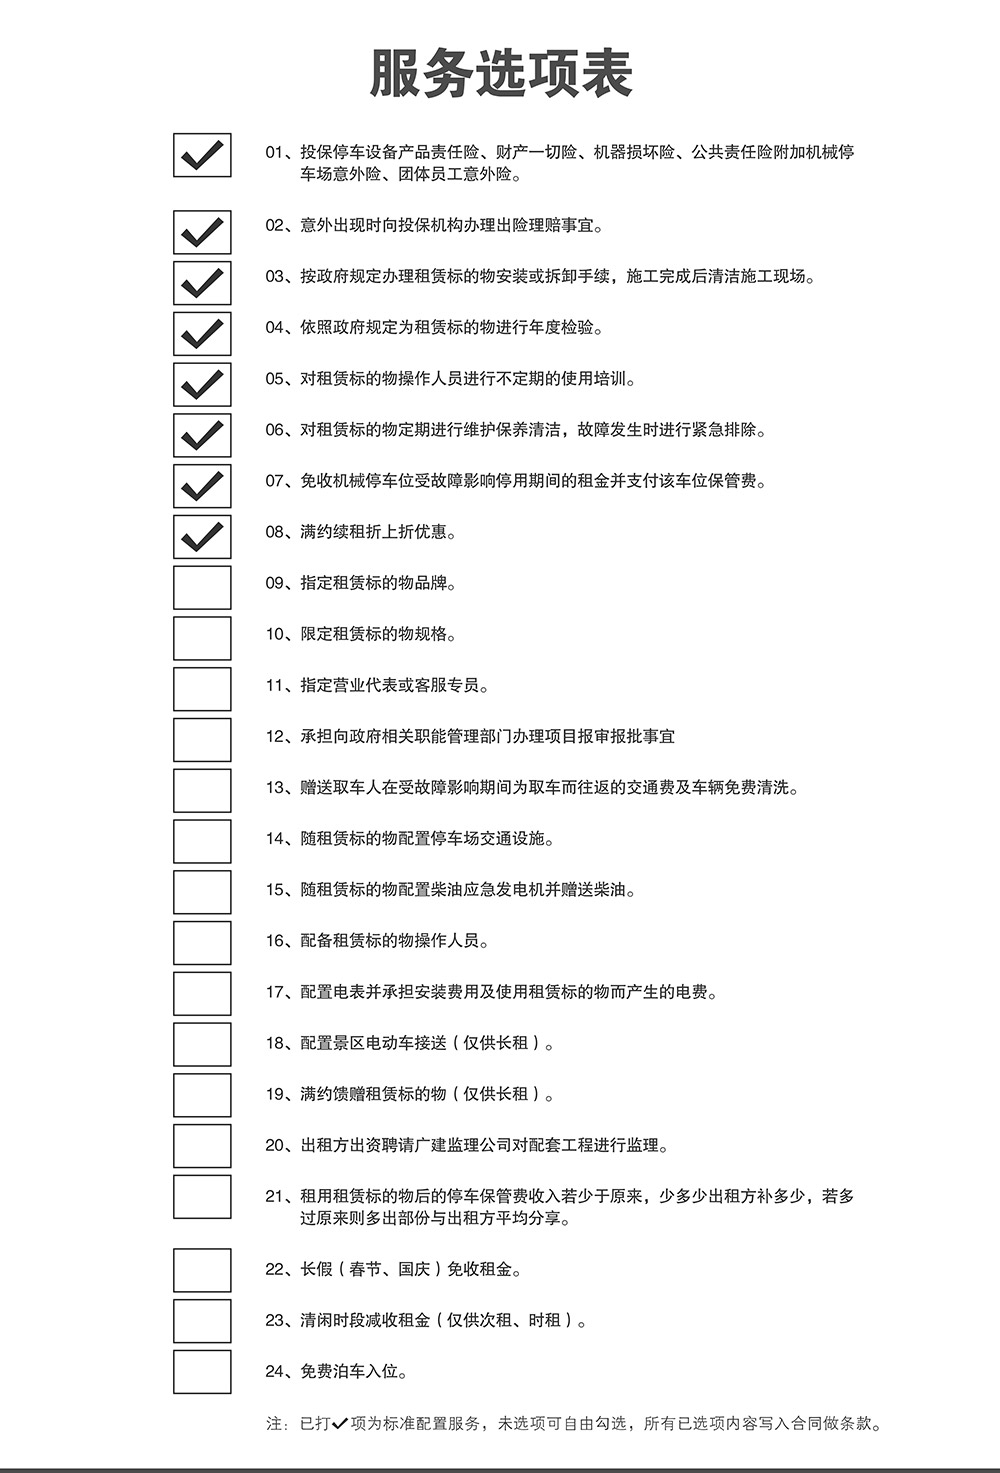 贵州贵阳停车设备租赁服务选项表.jpg